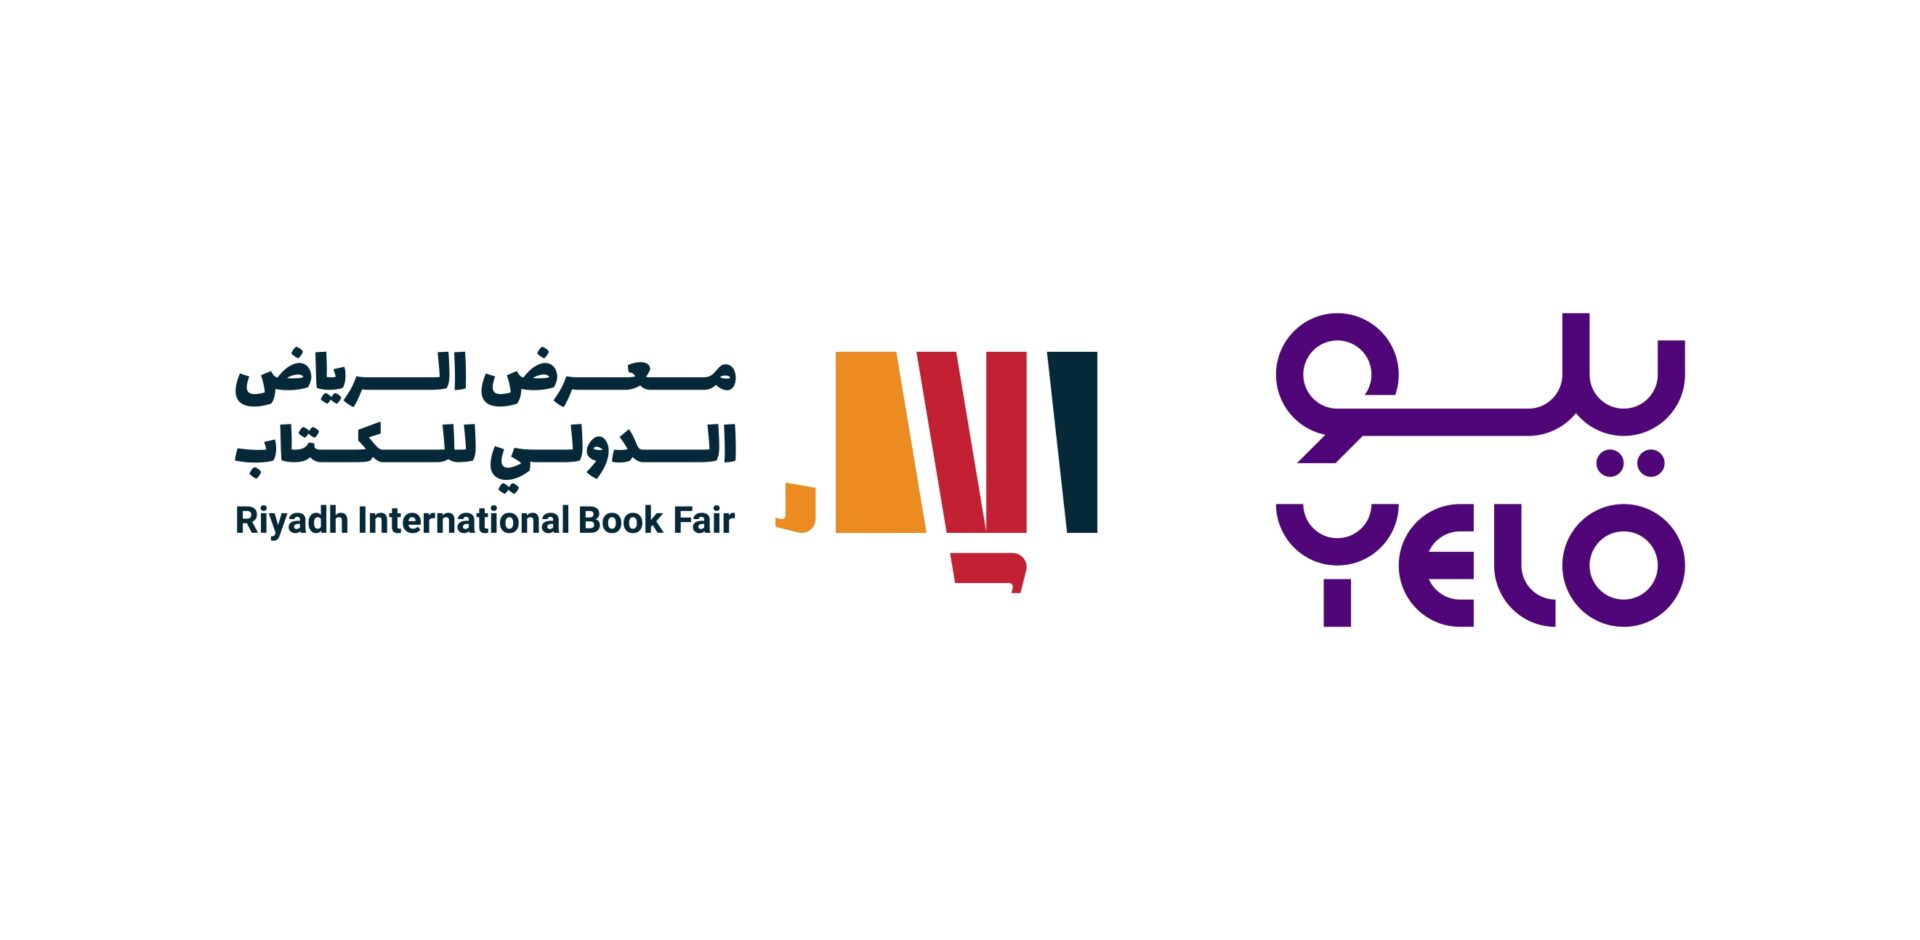 “يلو” راعياً رسمياً لمعرض الرياض الدولي للكتاب